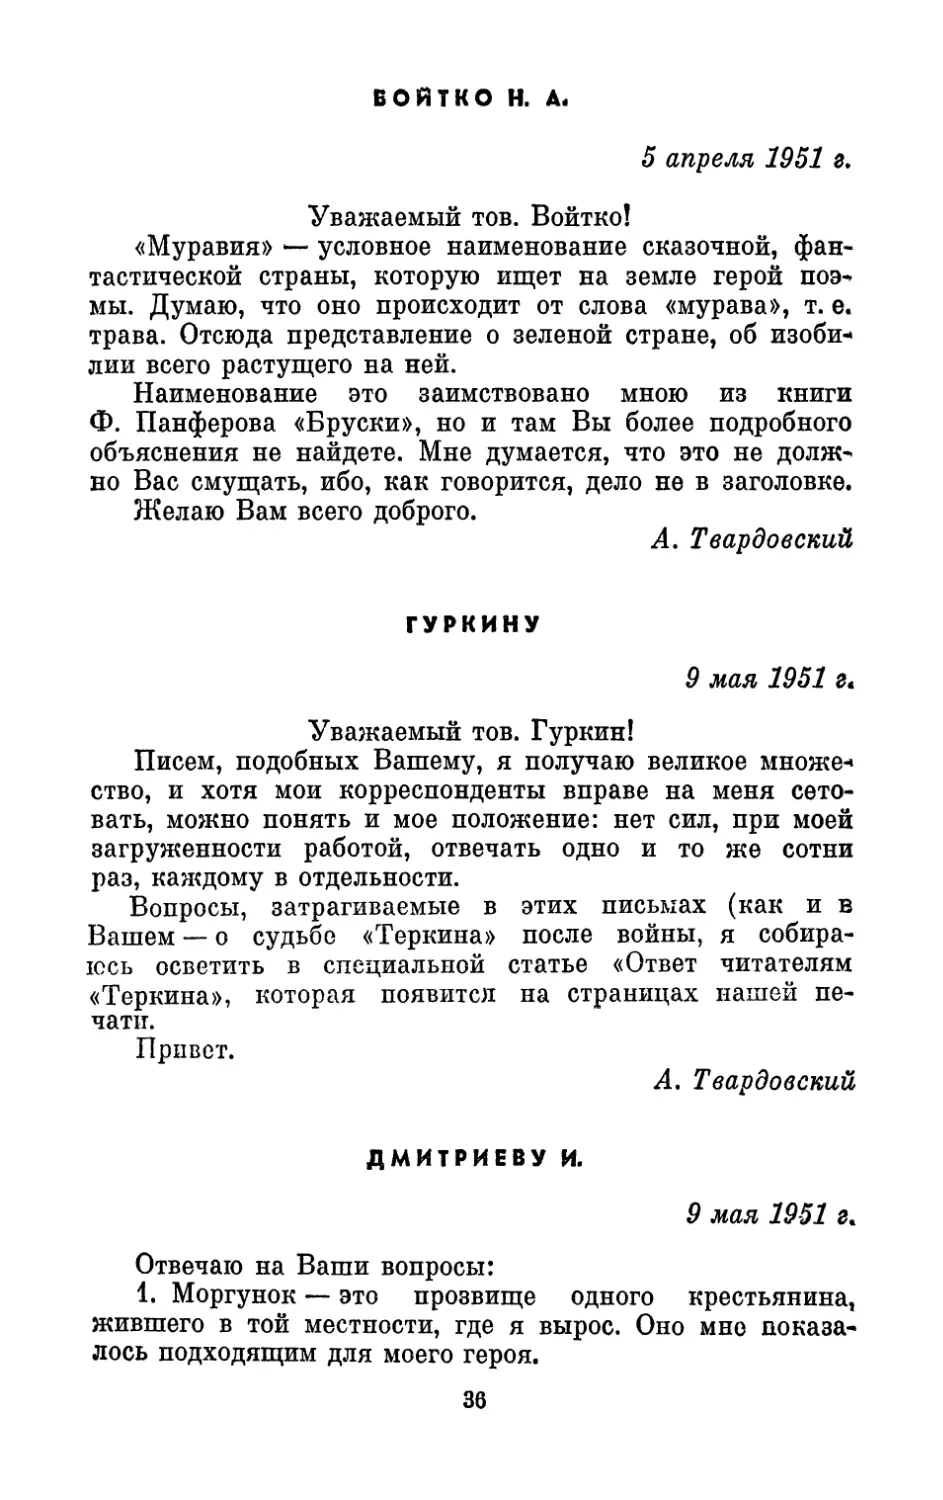 Войтко Н. А., 5 апреля 1951 г.
Гуркину, 9 мая 1951 г.
Дмитриеву И., 9 мая 1951 г.